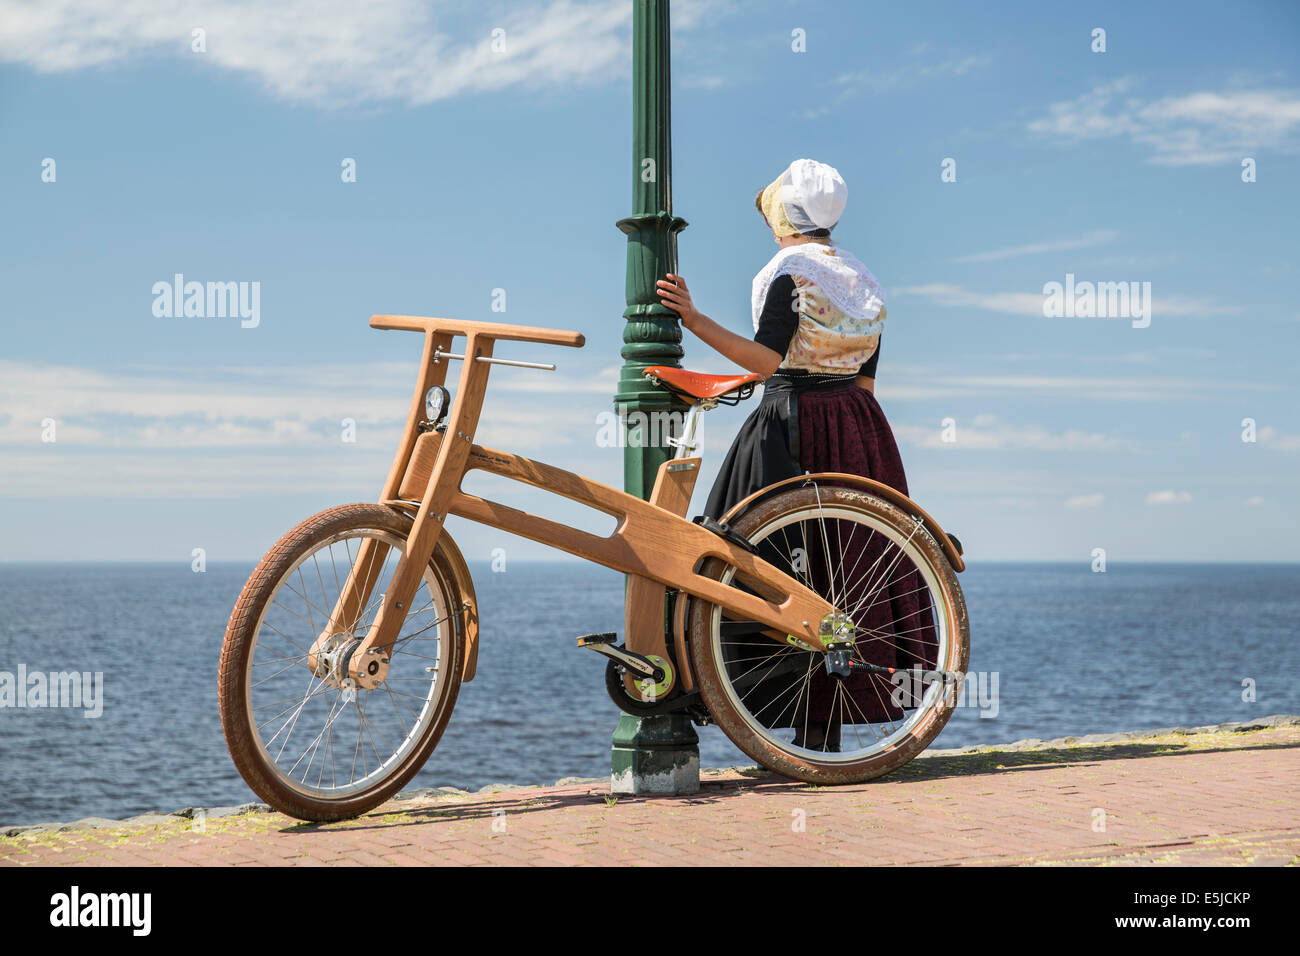 Niederlande, Urk, Ast Bike. Das Dutch Design aus Holz-Bike ist eine Schöpfung von Jan Gunneweg. Mädchen in Tracht Sonntag Stockfoto